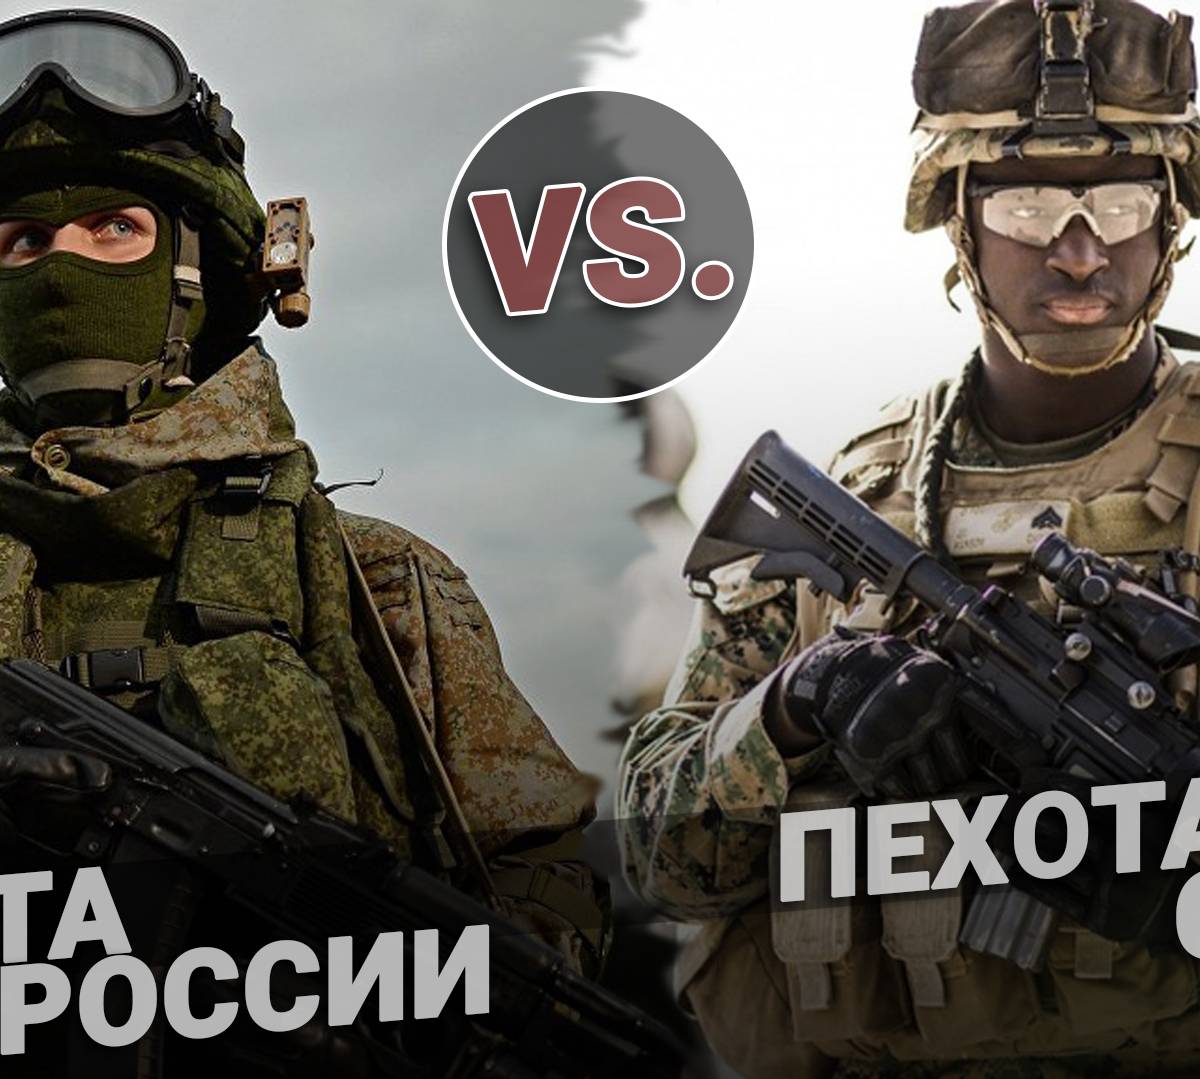 Сравнение экипировок пехоты США и России